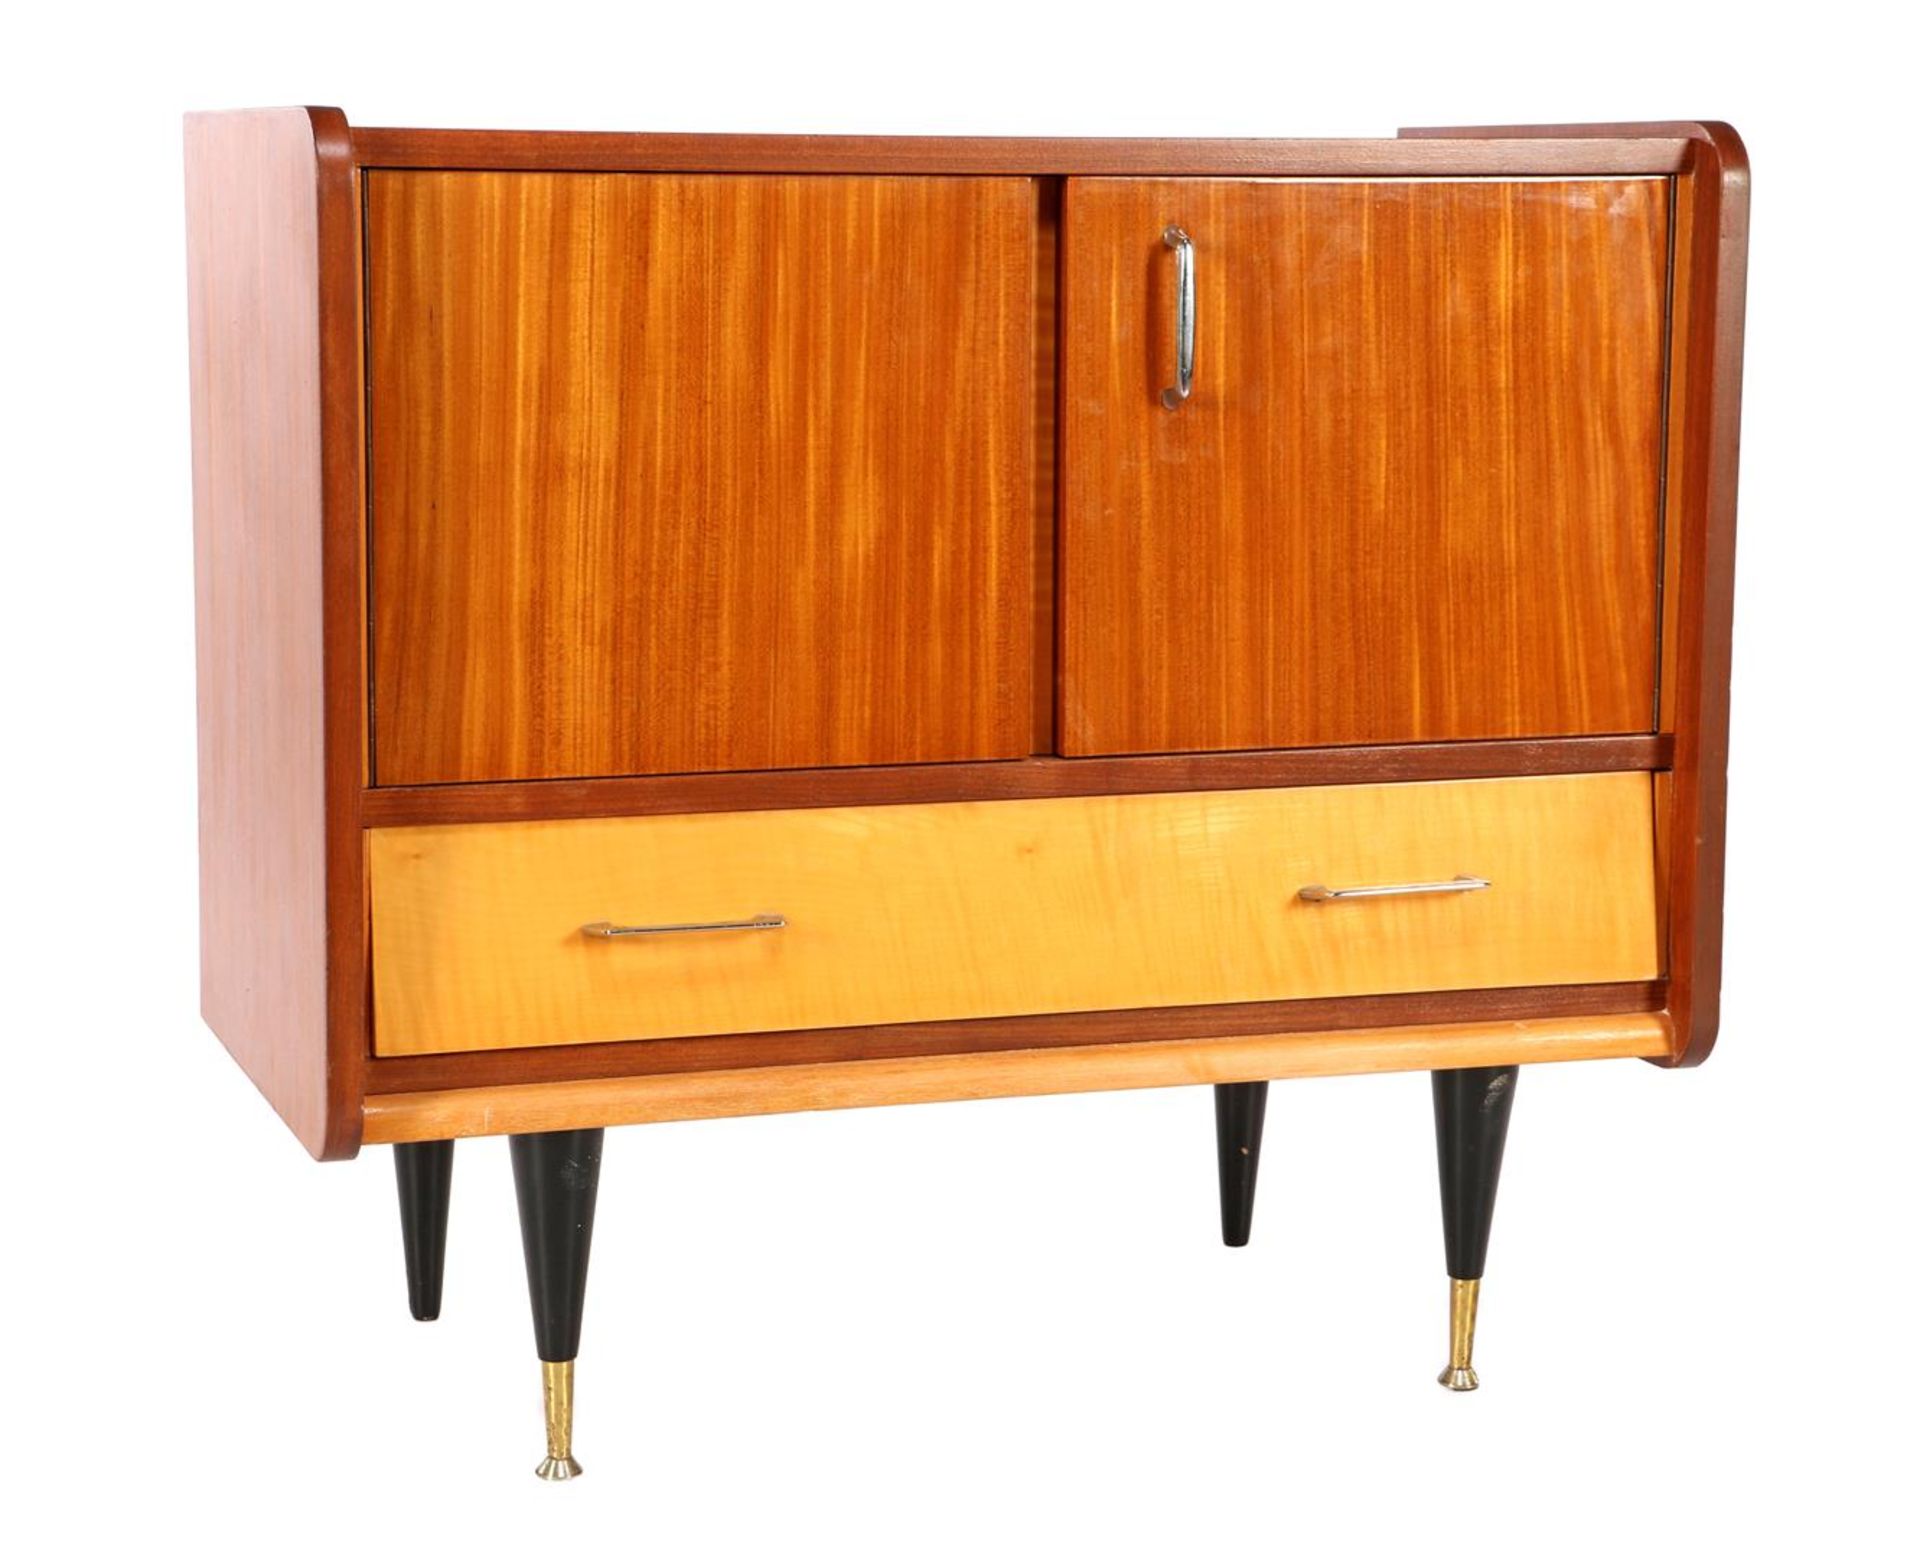 1970s walnut veneer 2-door cabinet